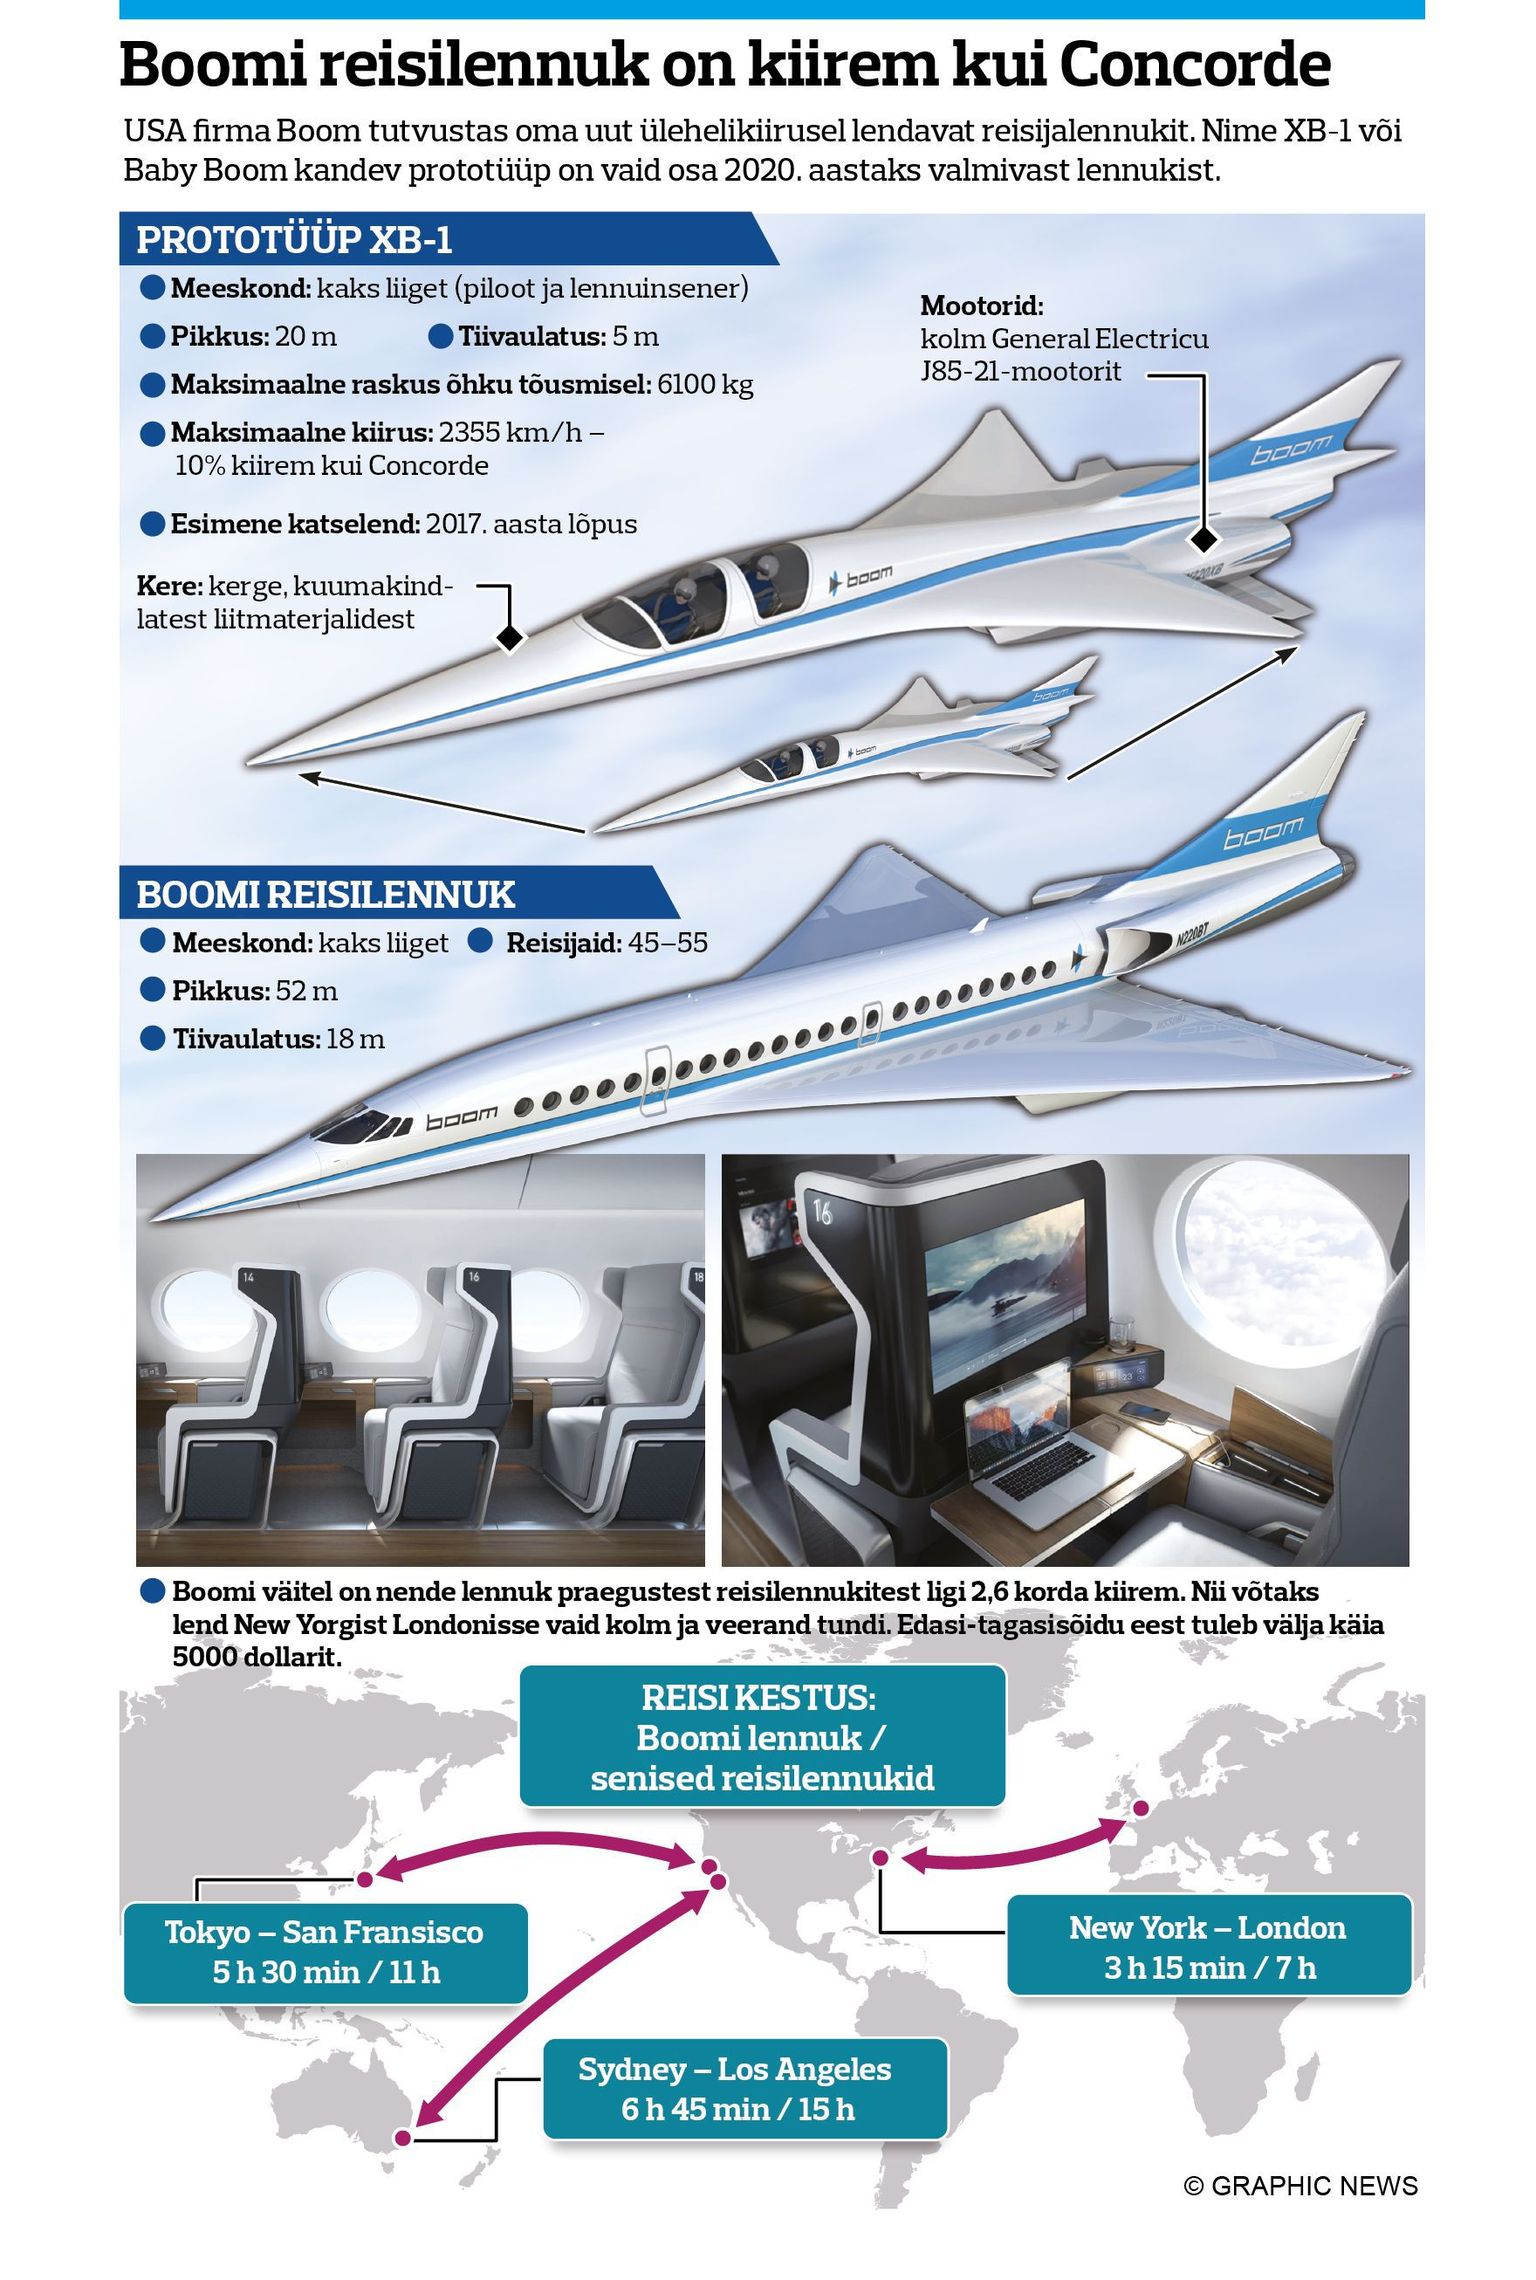 USA idufirma Boom tutvustas hiljuti oma plaanitava ülehelikiirusel lendava lennuki prototüüpi Baby Boom.